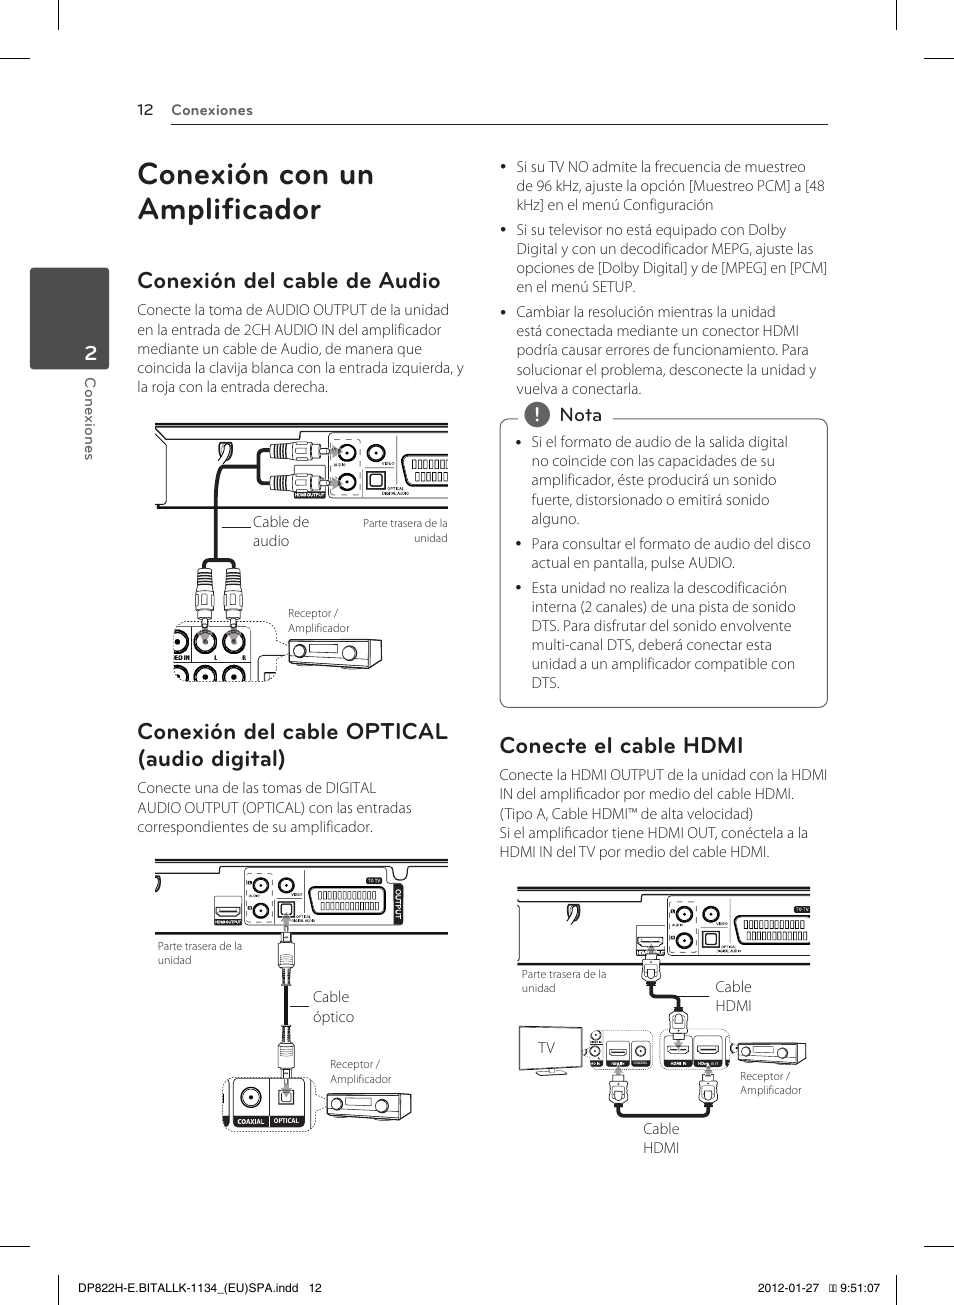 Conexión con un amplificador, Conexión del cable de audio, Conexión del cable optical (audio digital) | Conecte el cable hdmi | LG DP822H Manual del usuario | Página 12 / 24